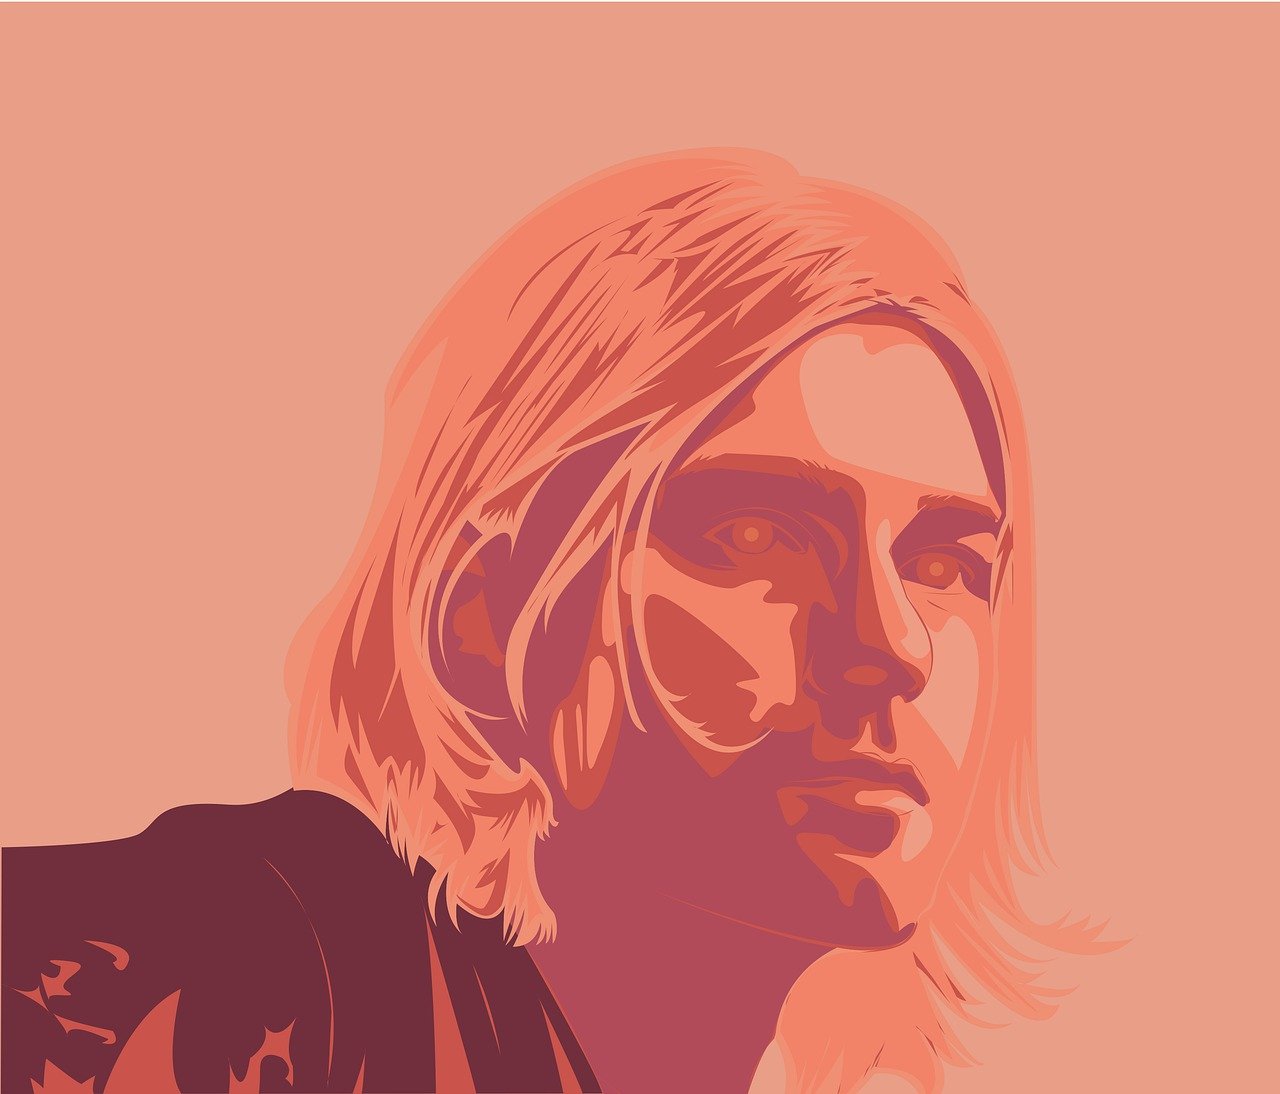 Κερτ Κομπέιν: Ντοκιμαντέρ του BBC για τα 30 χρόνια από τον θάνατο του frontman των Nirvana